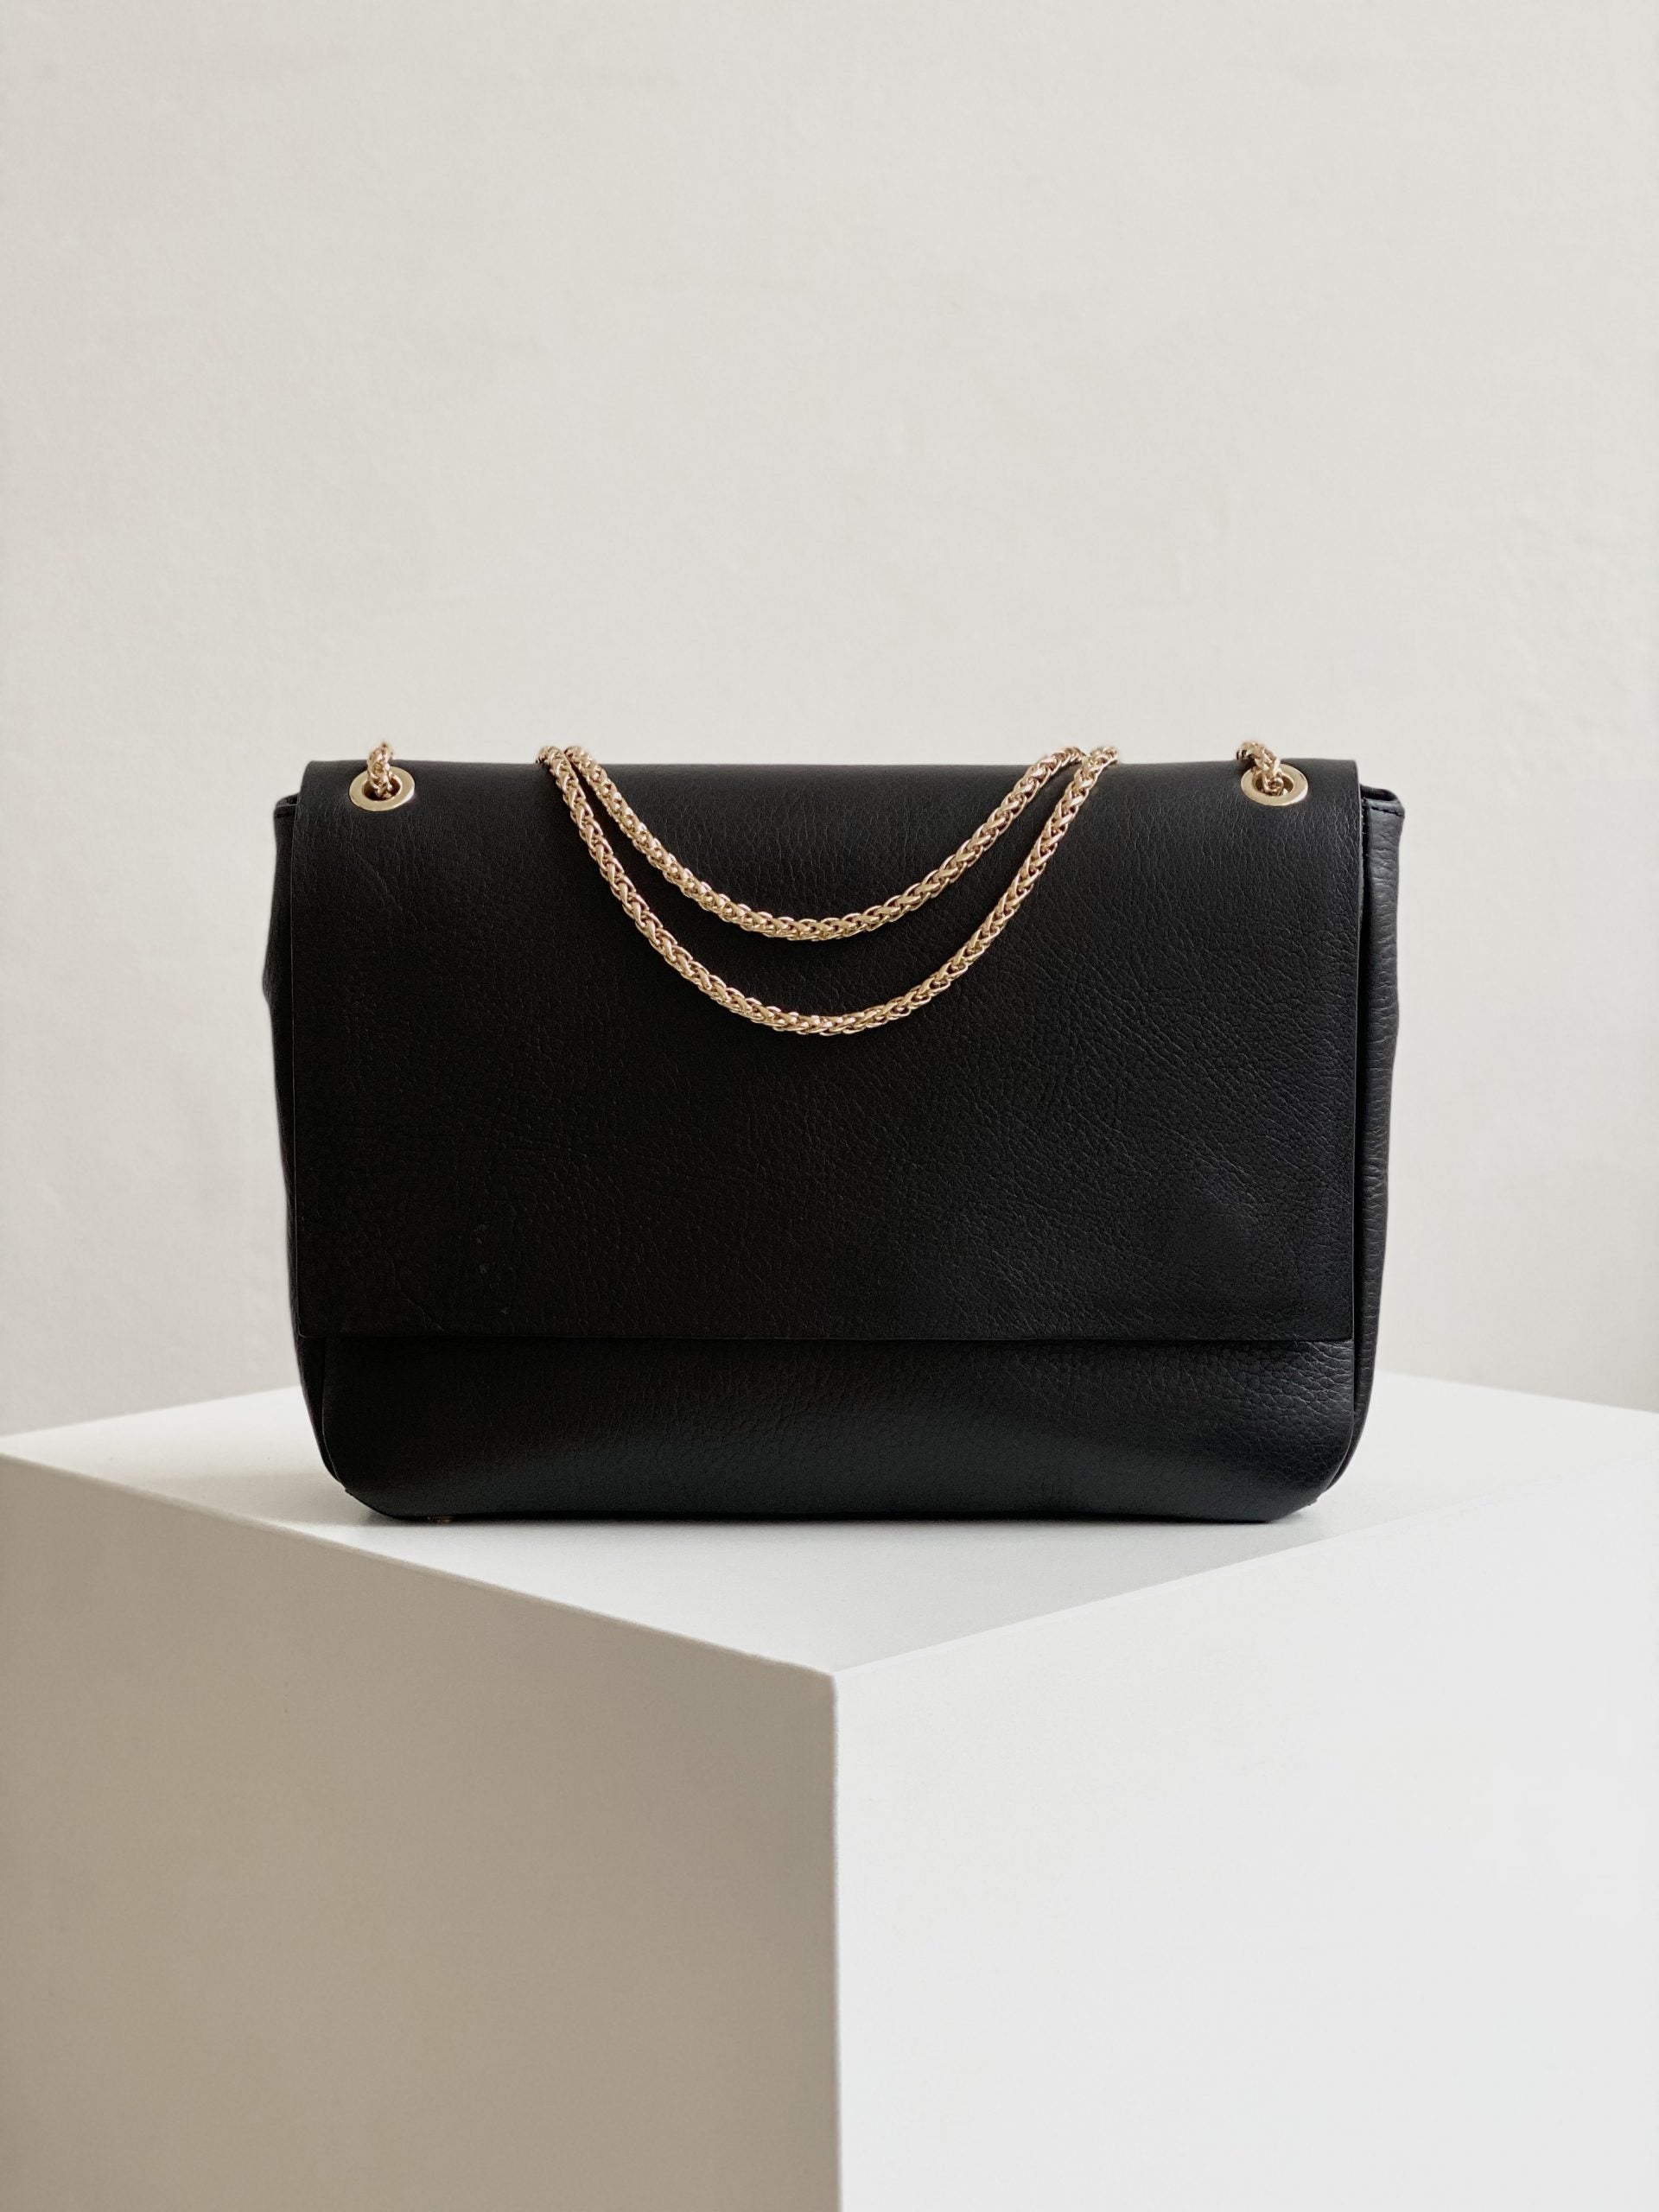 Belle Leather Shoulder Bag Black